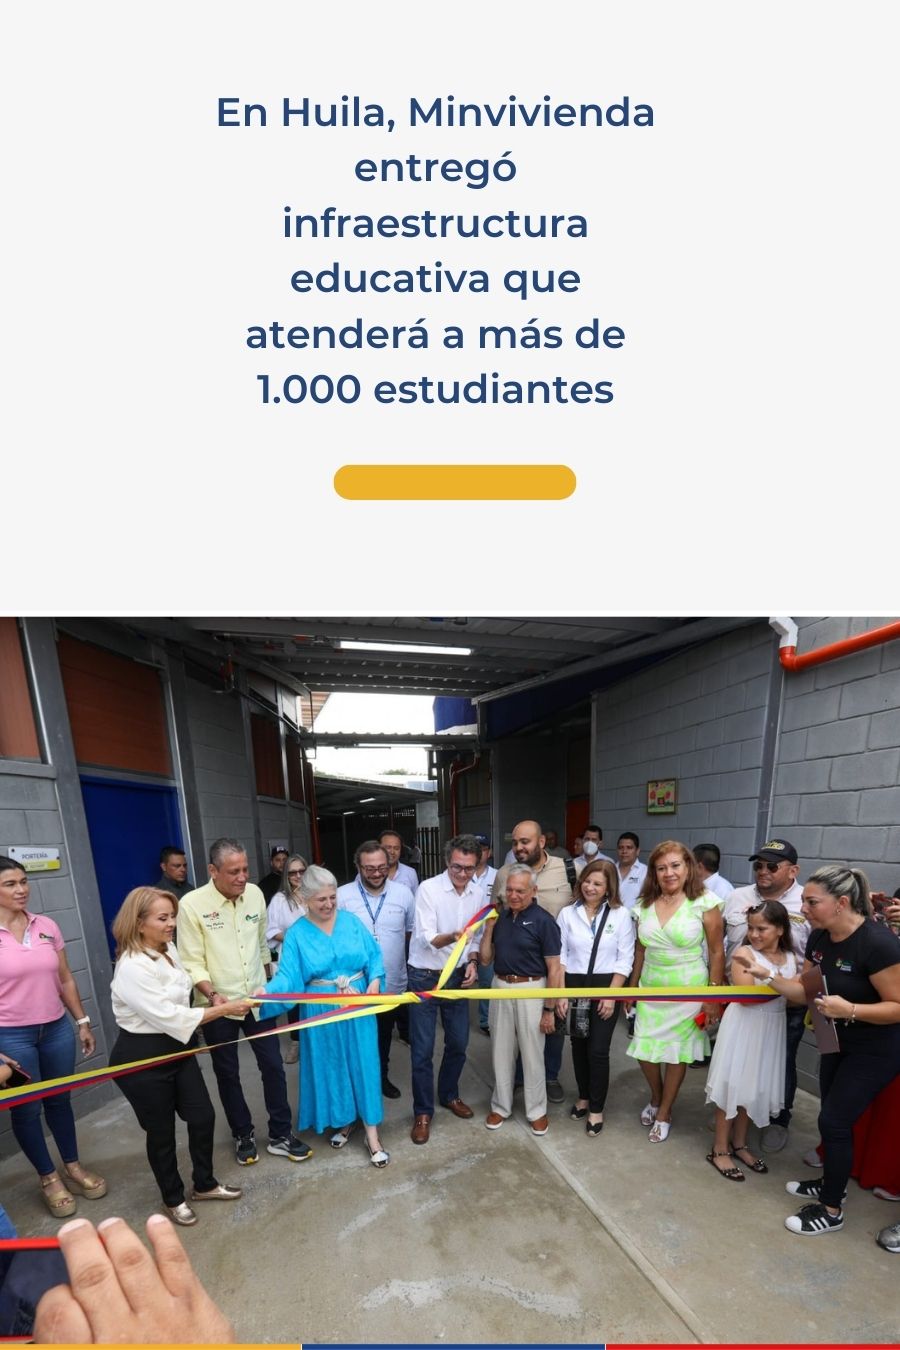 En Huila, Minvivienda entregó infraestructura educativa que atenderá a más de 1.000 estudiantes